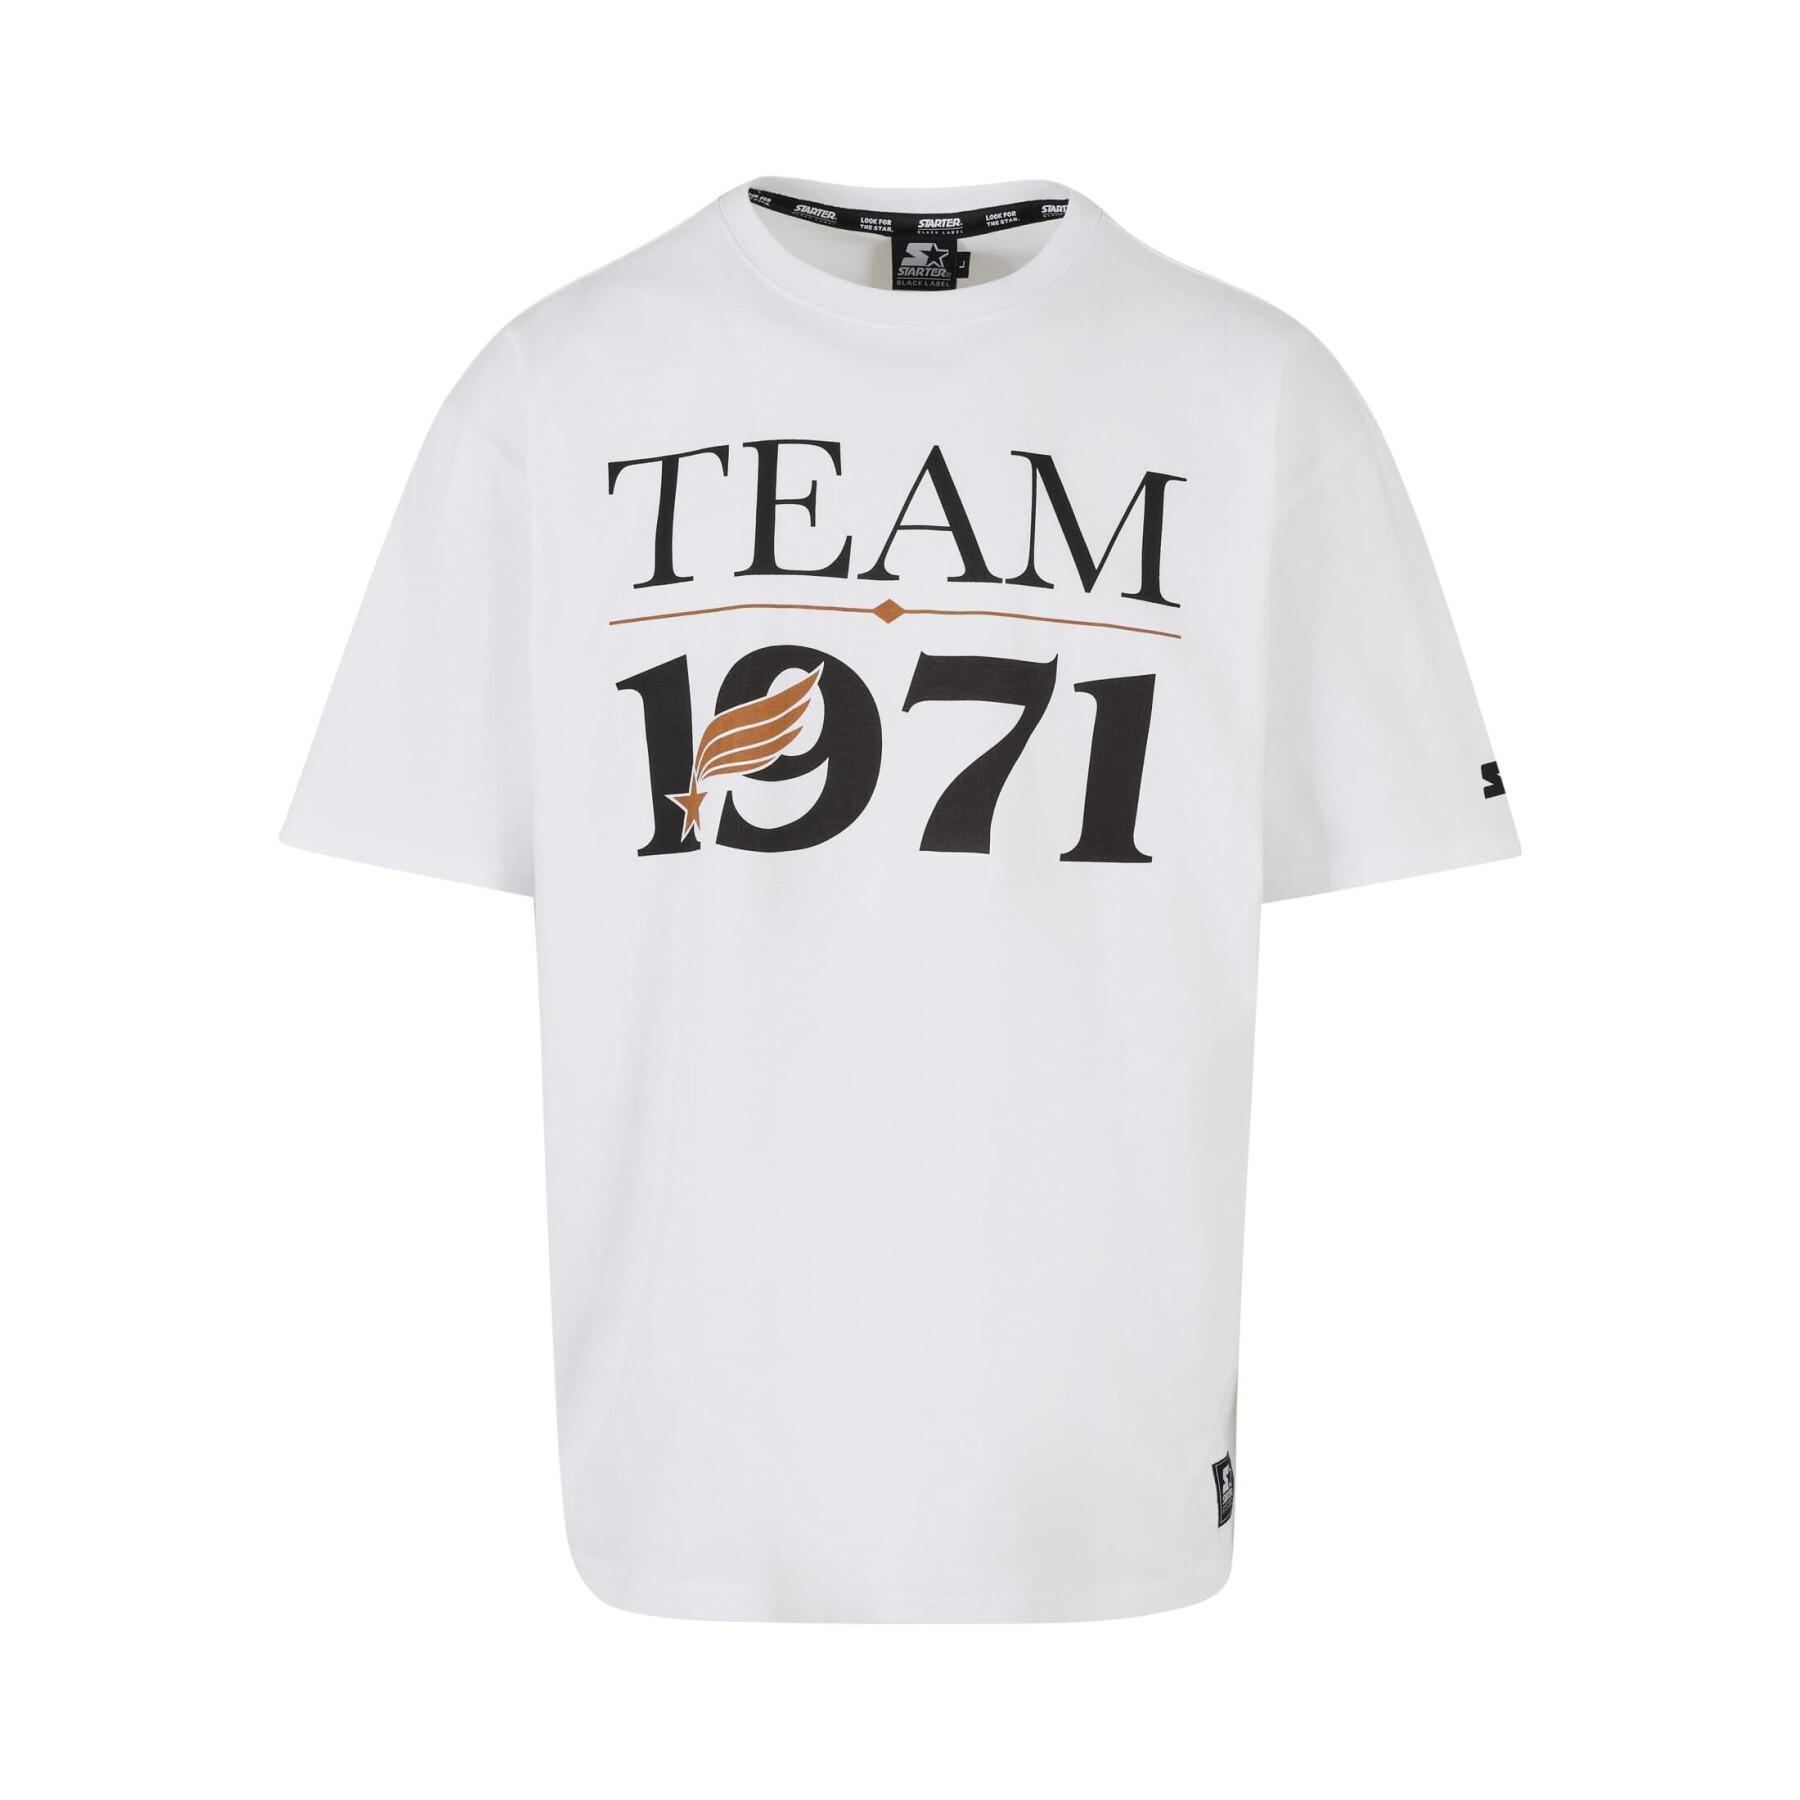 Camiseta oversize Starter Starter Team 1971